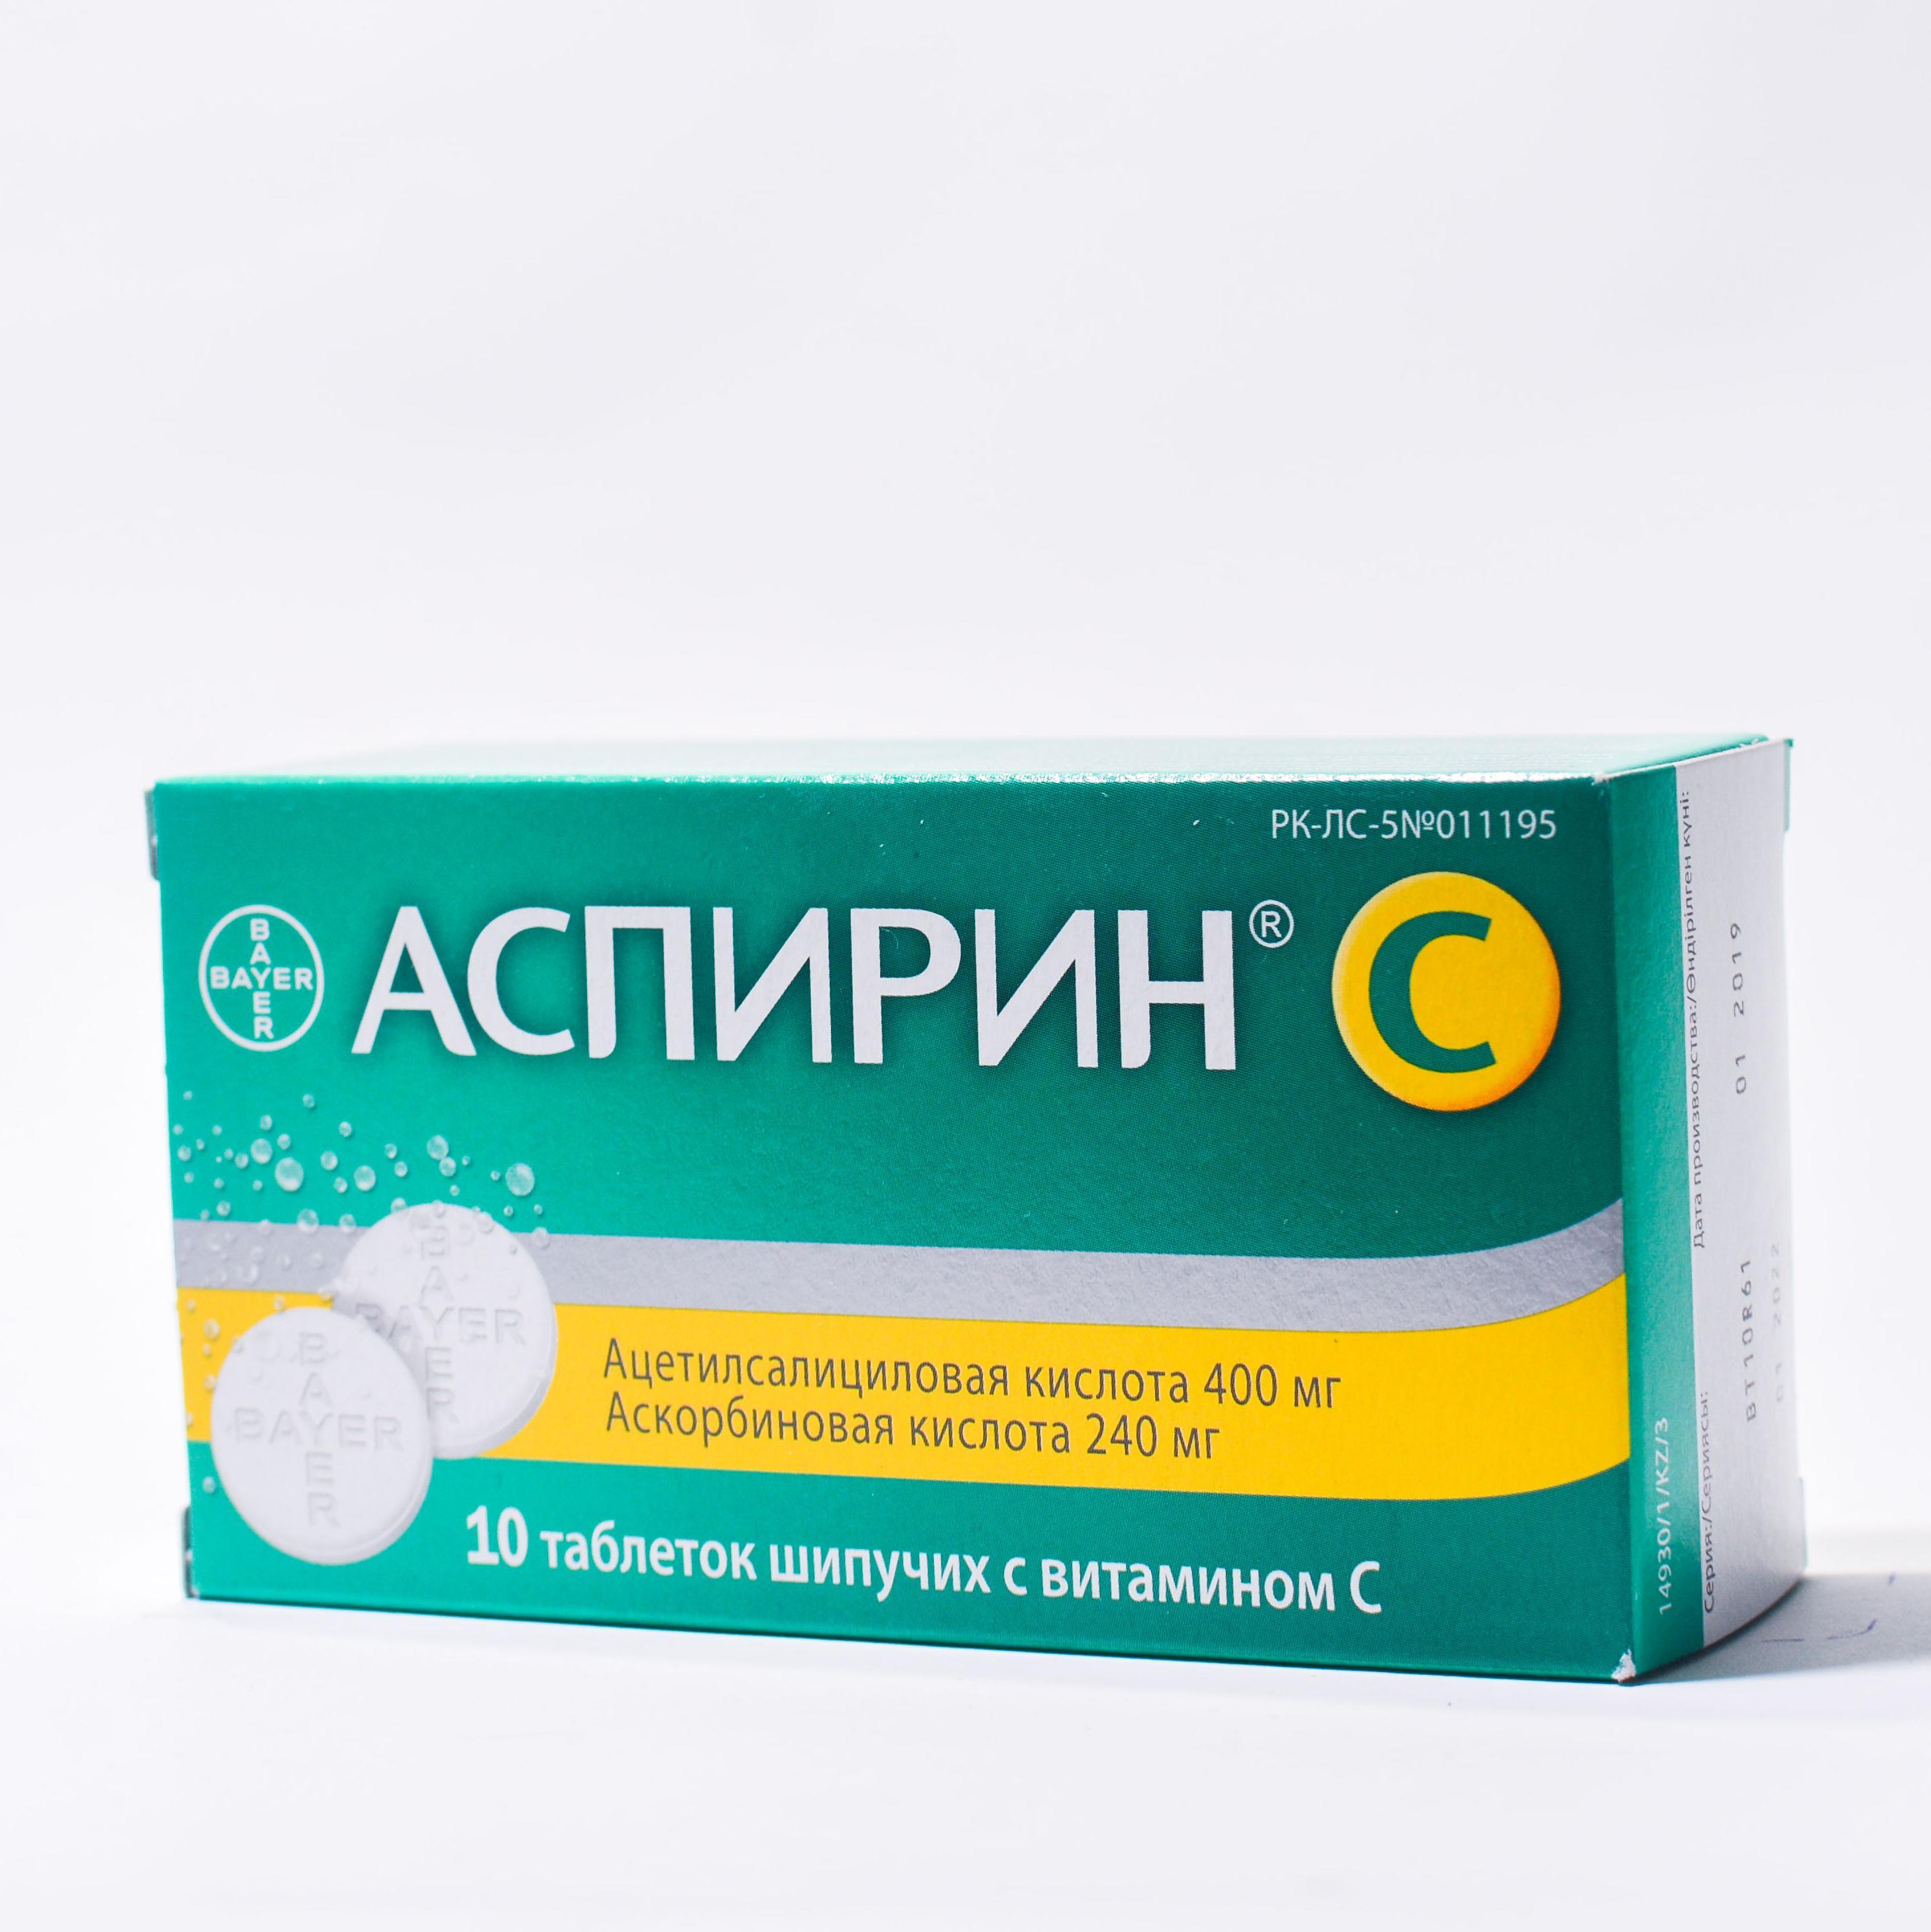 Аспирин-С таблетки шипучие № 10 в Нур-Султане | Цена, инструкция, аналоги